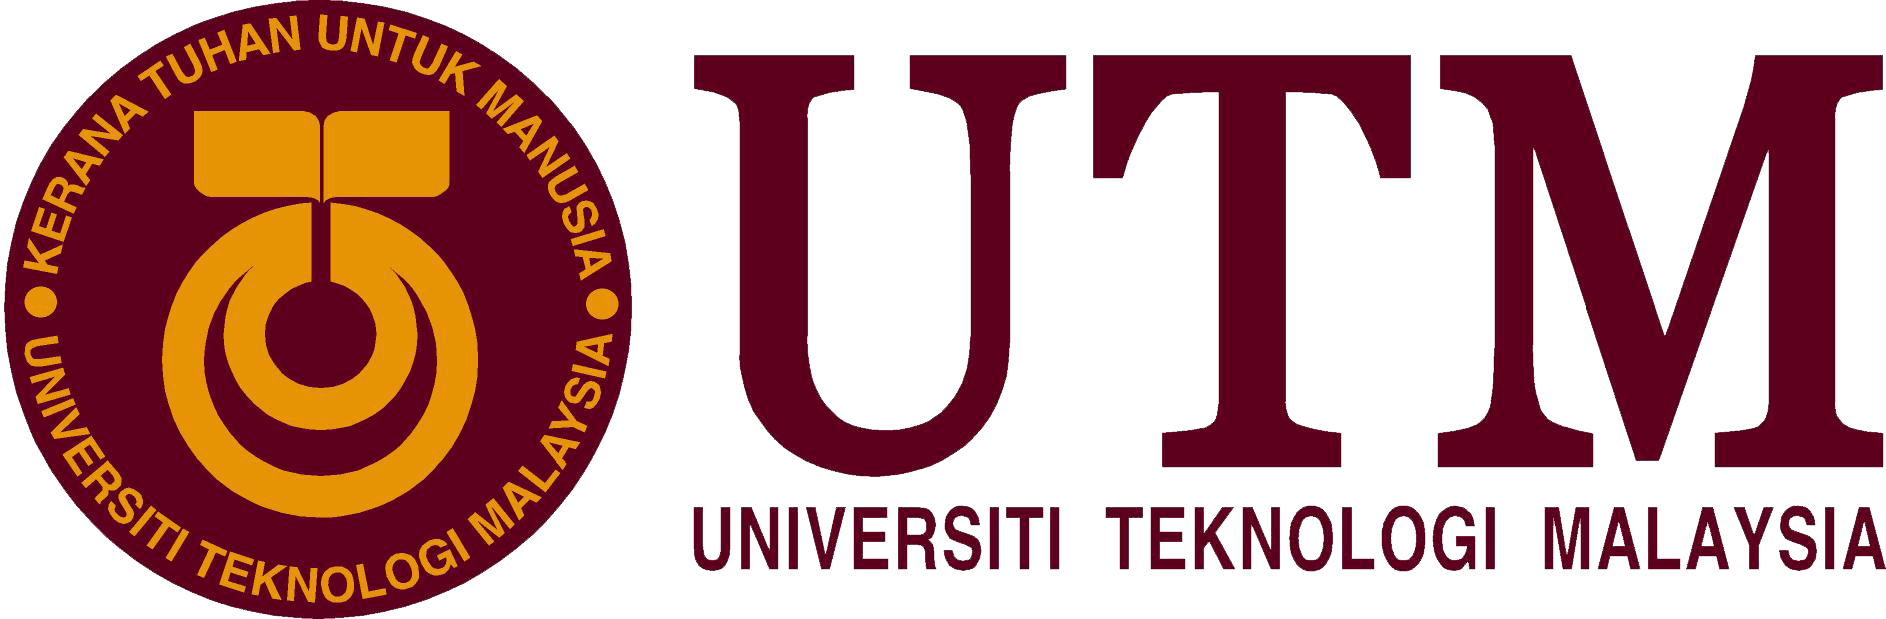 جامعة التكنولوجيا الماليزية | University of Technology Malaysia (UTM)